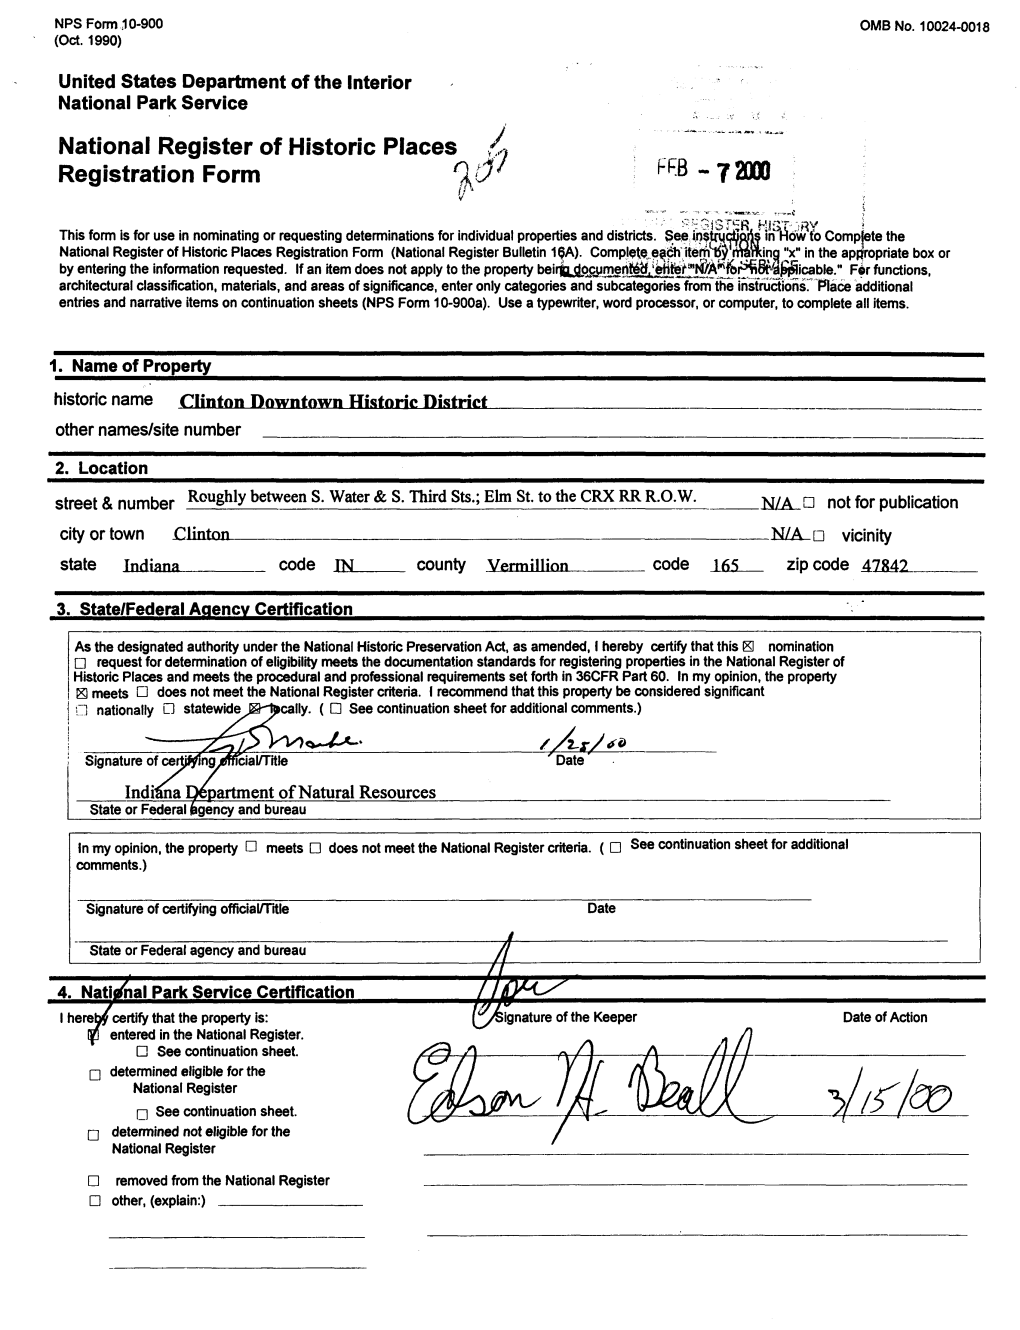 National Register of Historic Places Registration Form - 72000